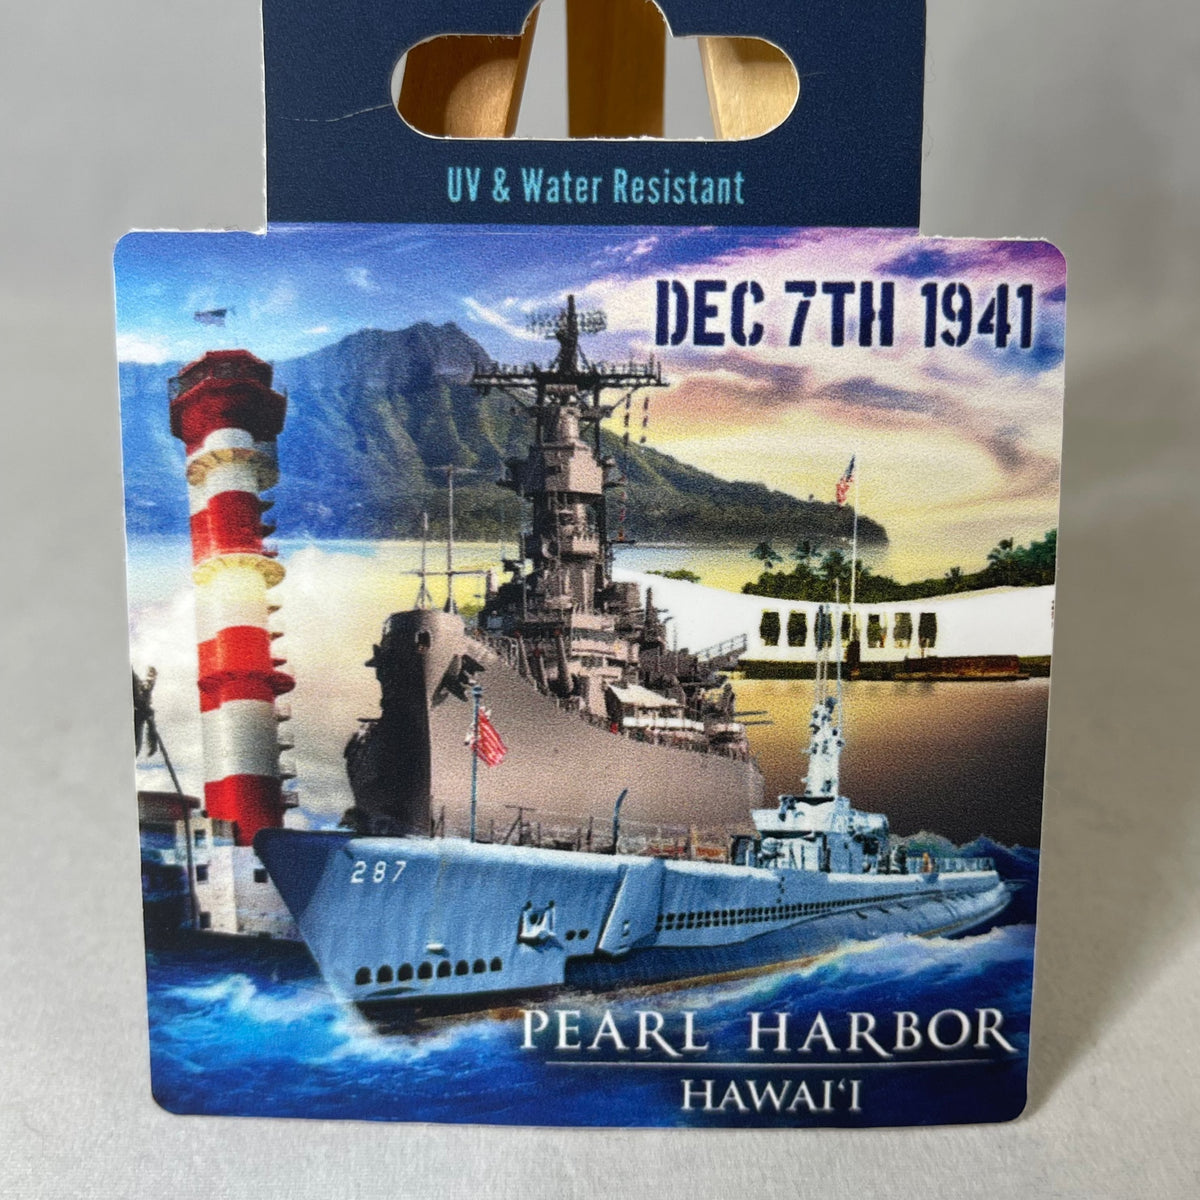 Pearl Harbor Sticker